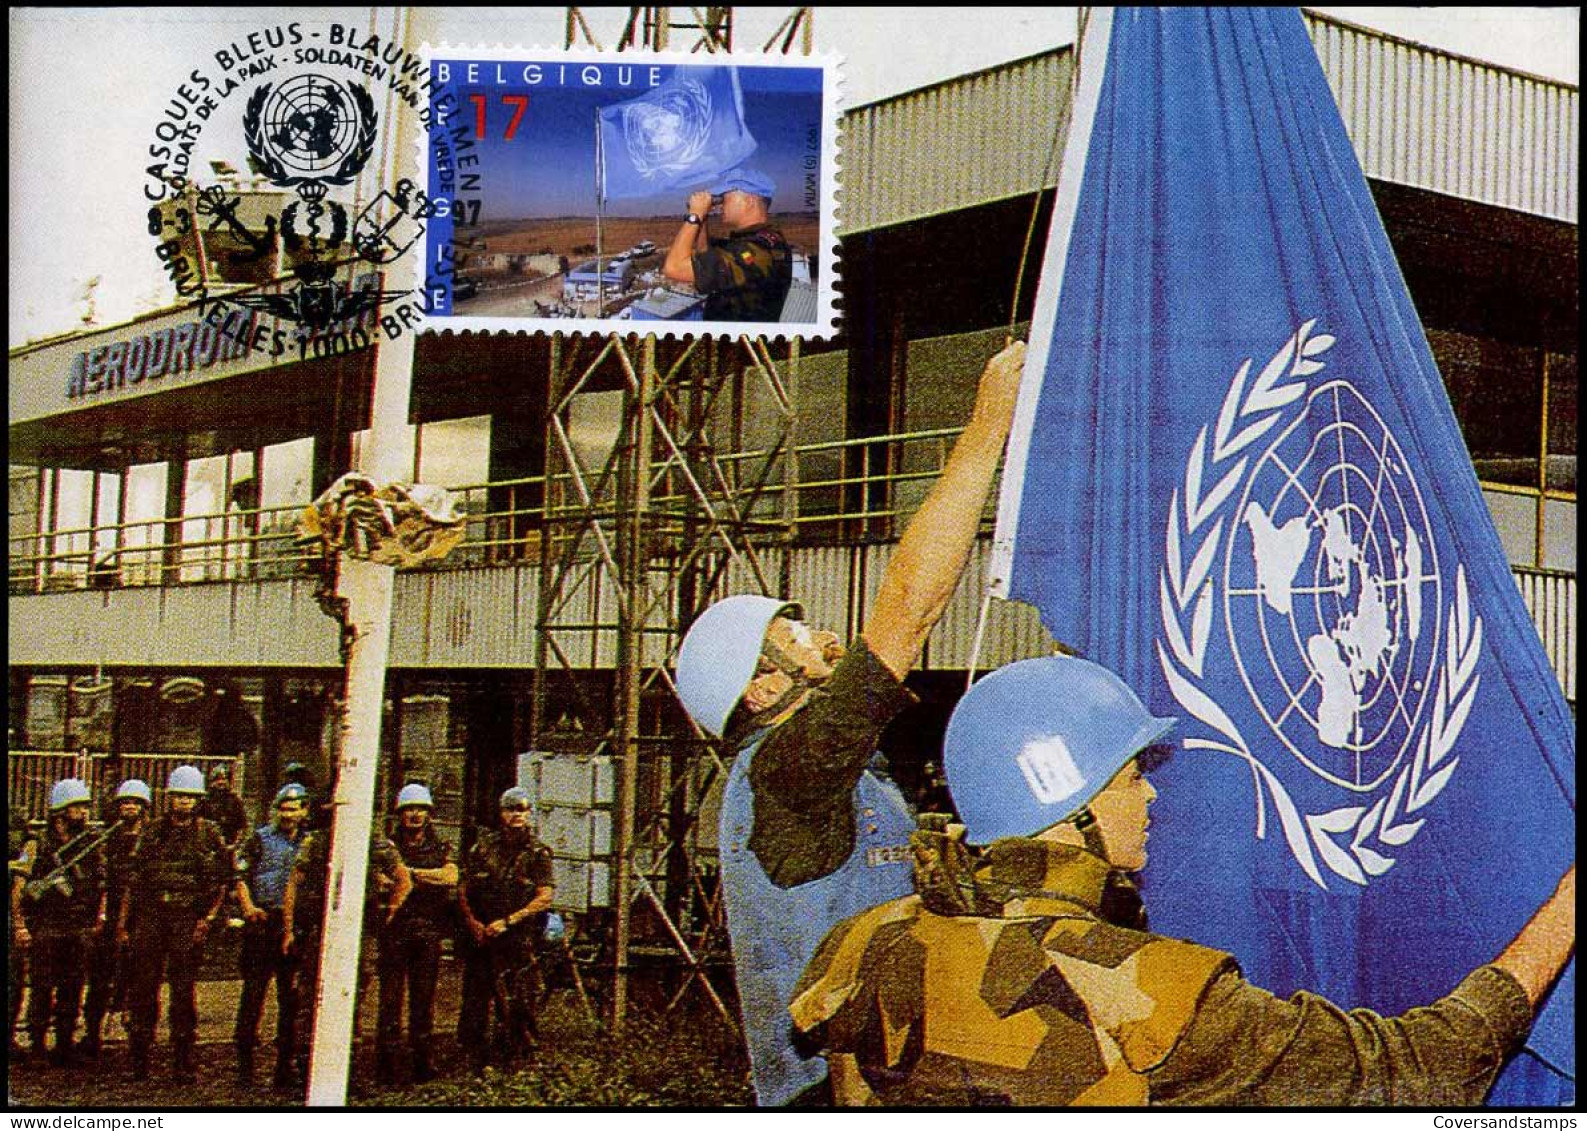 2692 - MK - Blauwhelmen - Belgische MilitaiRenéonder UNO Vlag  - 1991-2000